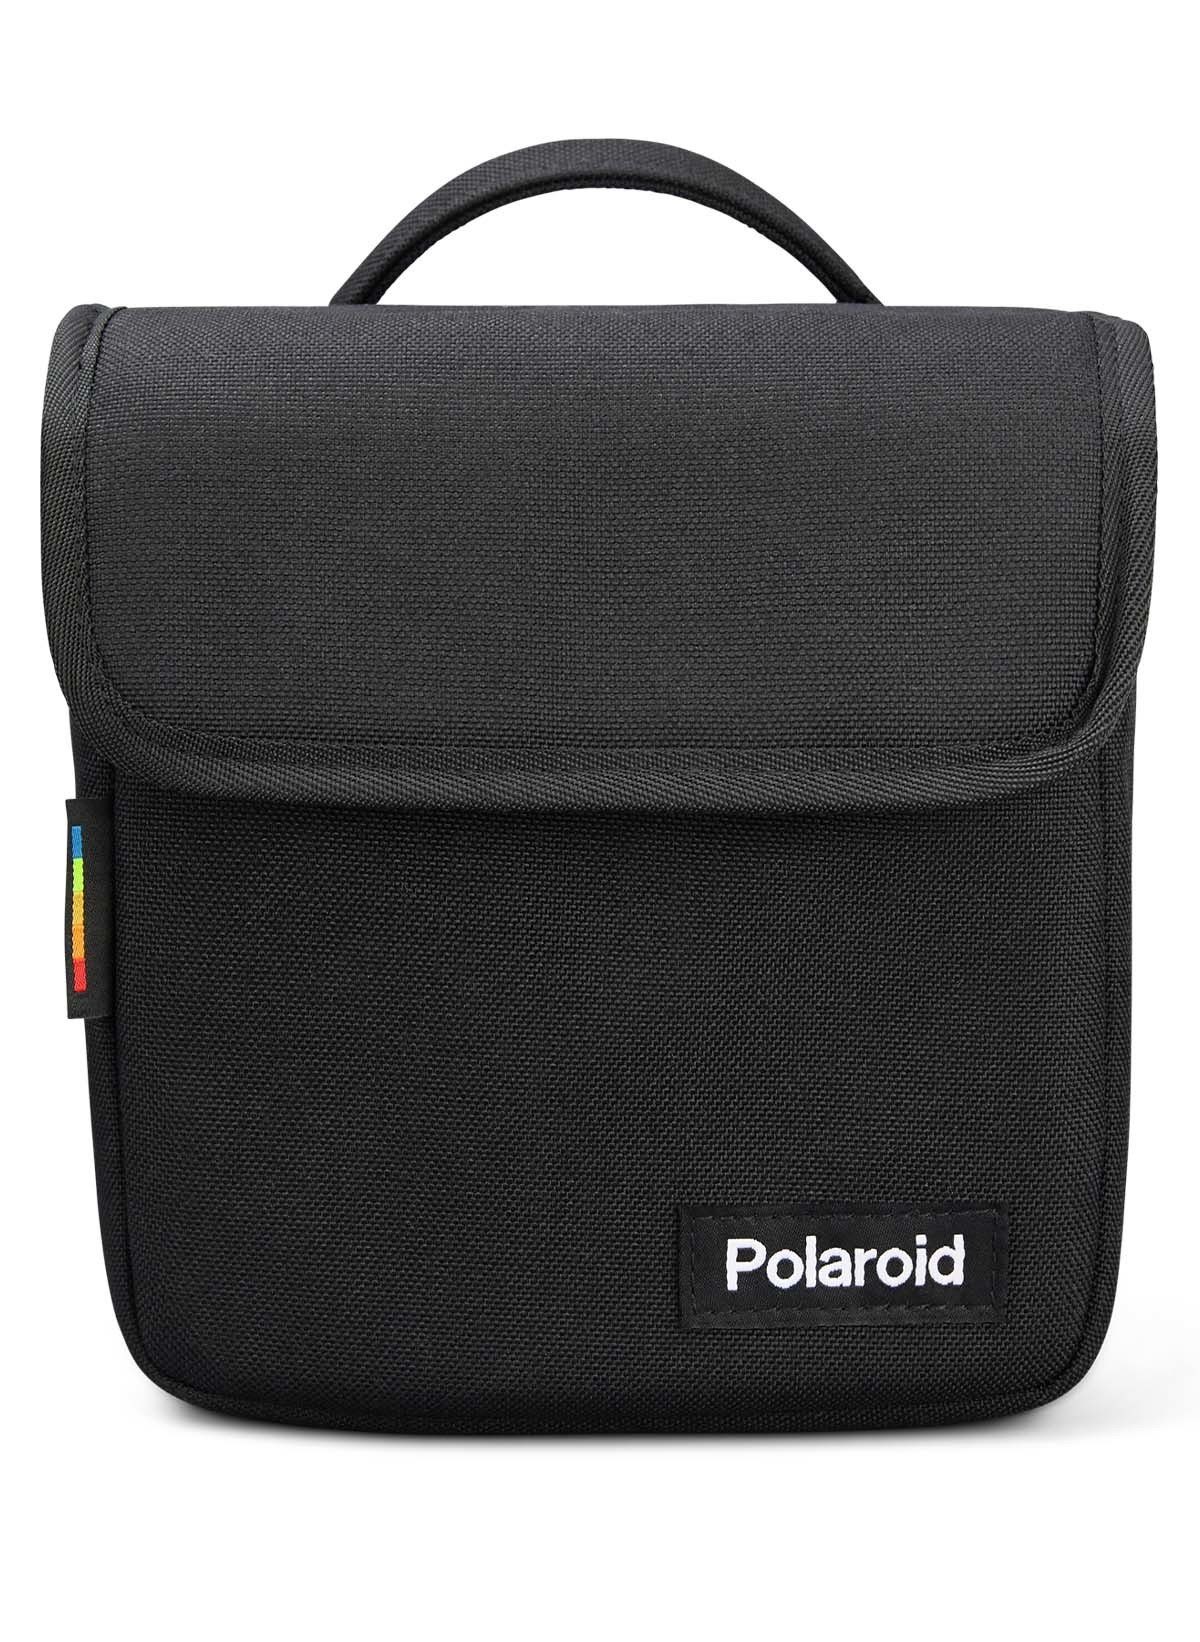 Polaroid Originals Kameratasche Box Camera Bag, Fleece-Futter,  Herausnehmbare Innenpolsterung